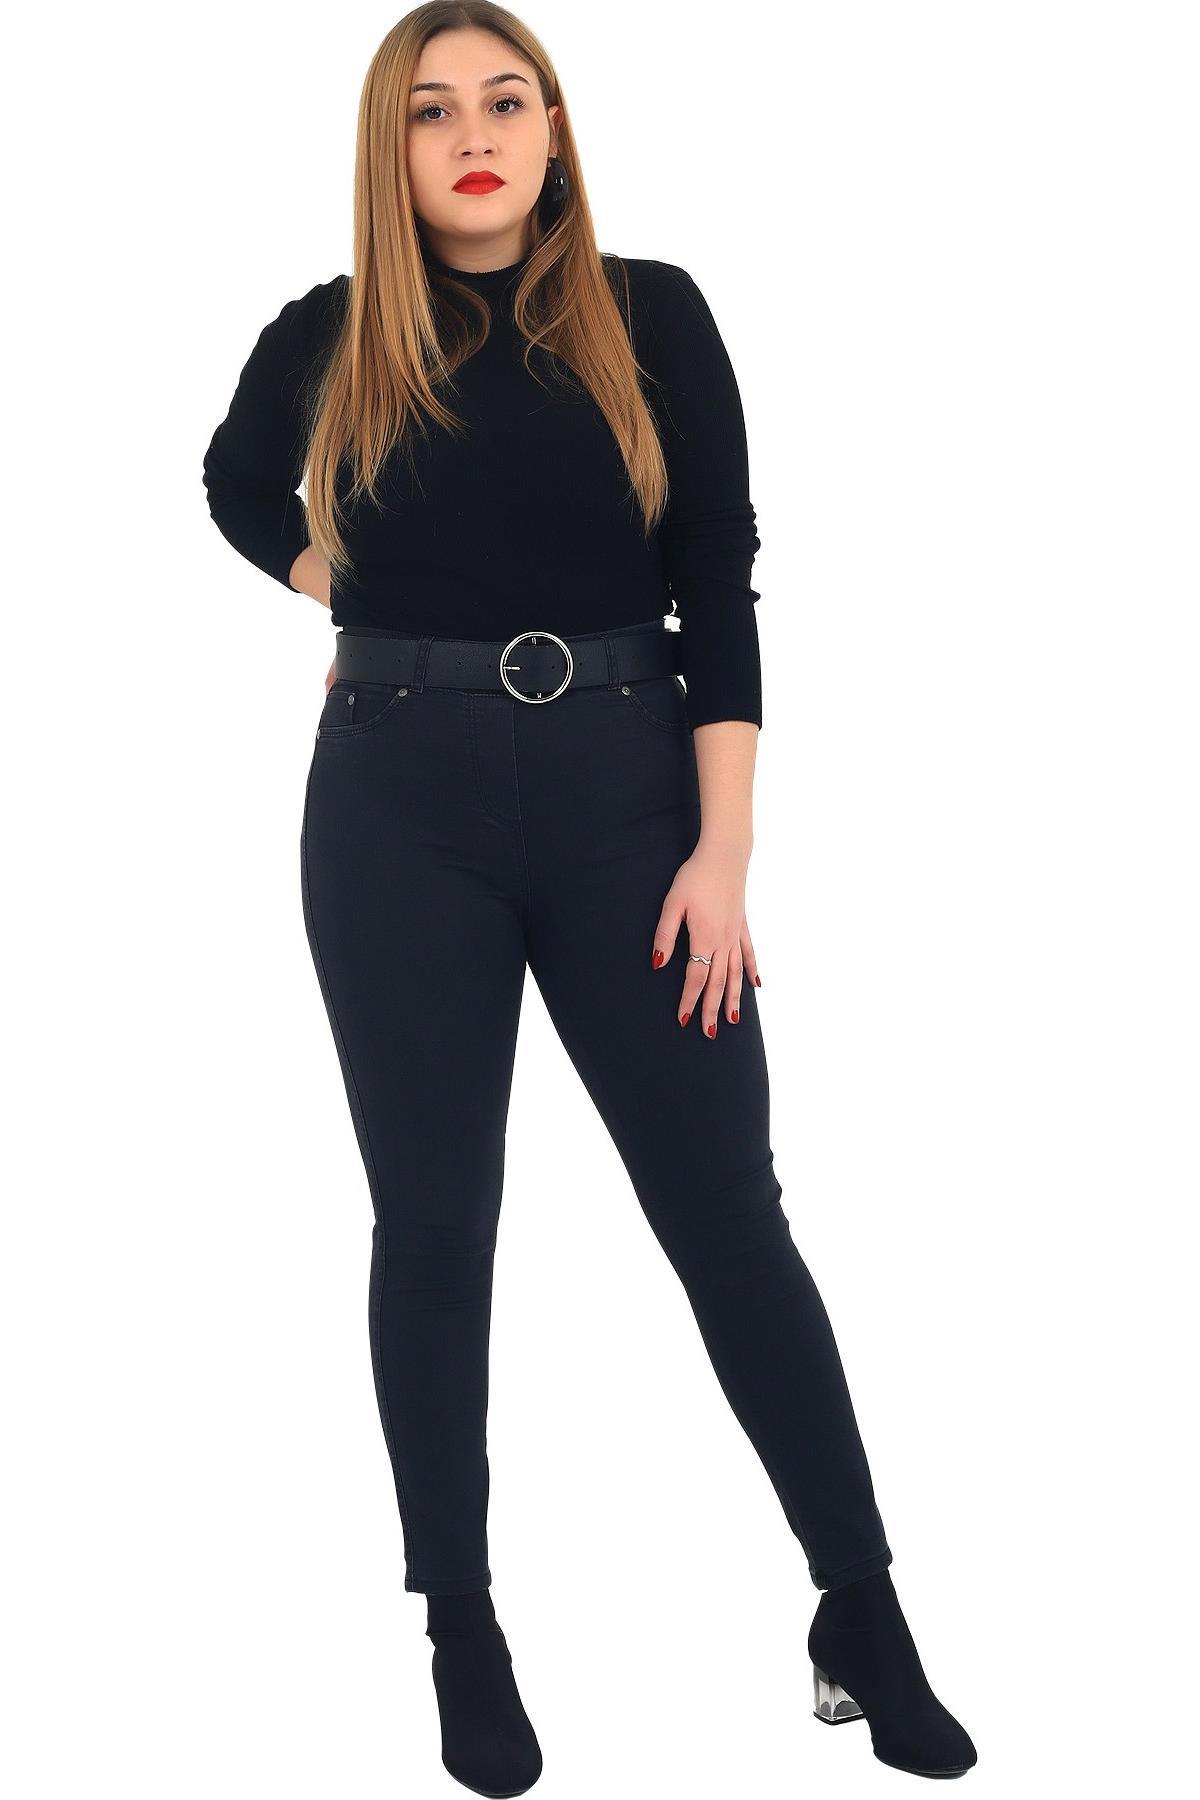 Fierte Kadın Büyük Beden Pantolon Rg1239Pb Kanvas Siyah Haki Büyük Beden Alt Giyim